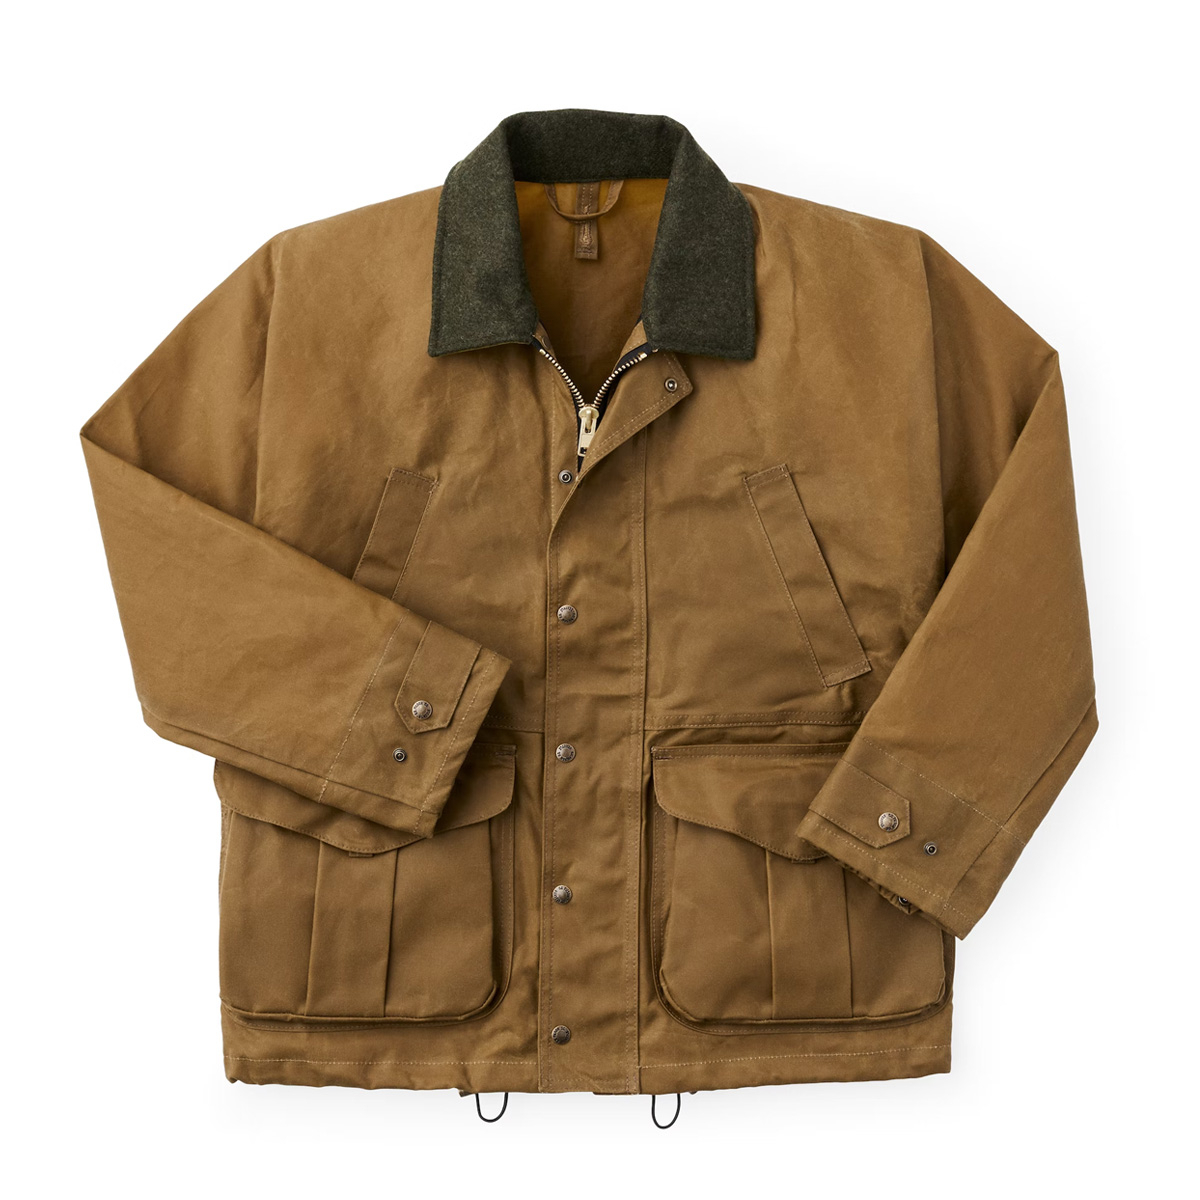 Filson Cloth Field Jacket Dark Tan, perfecte jas voor weersinvloeden.